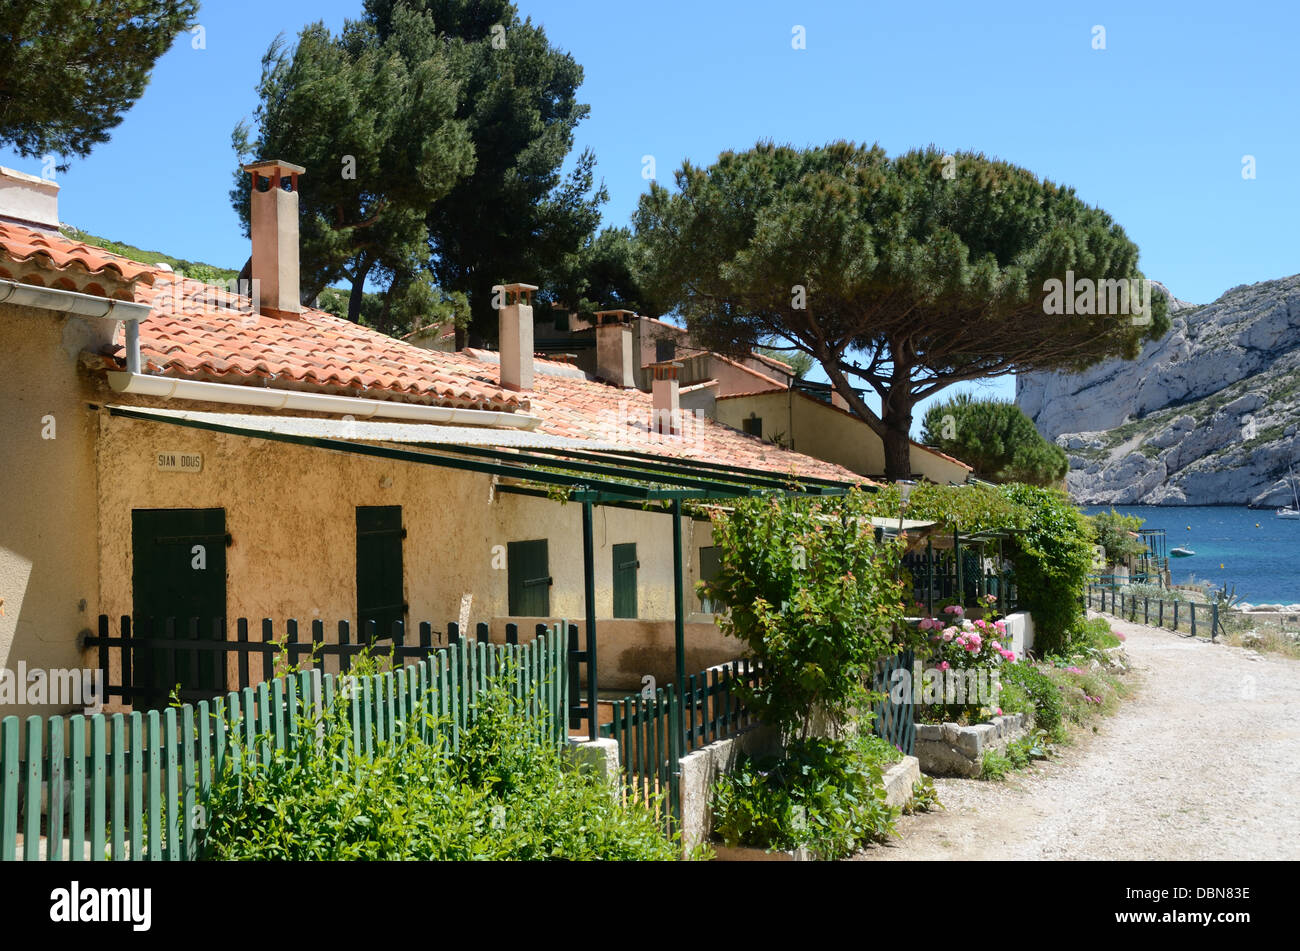 Cabanons oder Urlaub Hütten am Sormiou Calanque in den Calanques Nationalpark in der Nähe von Marseille Provence Frankreich Stockfoto